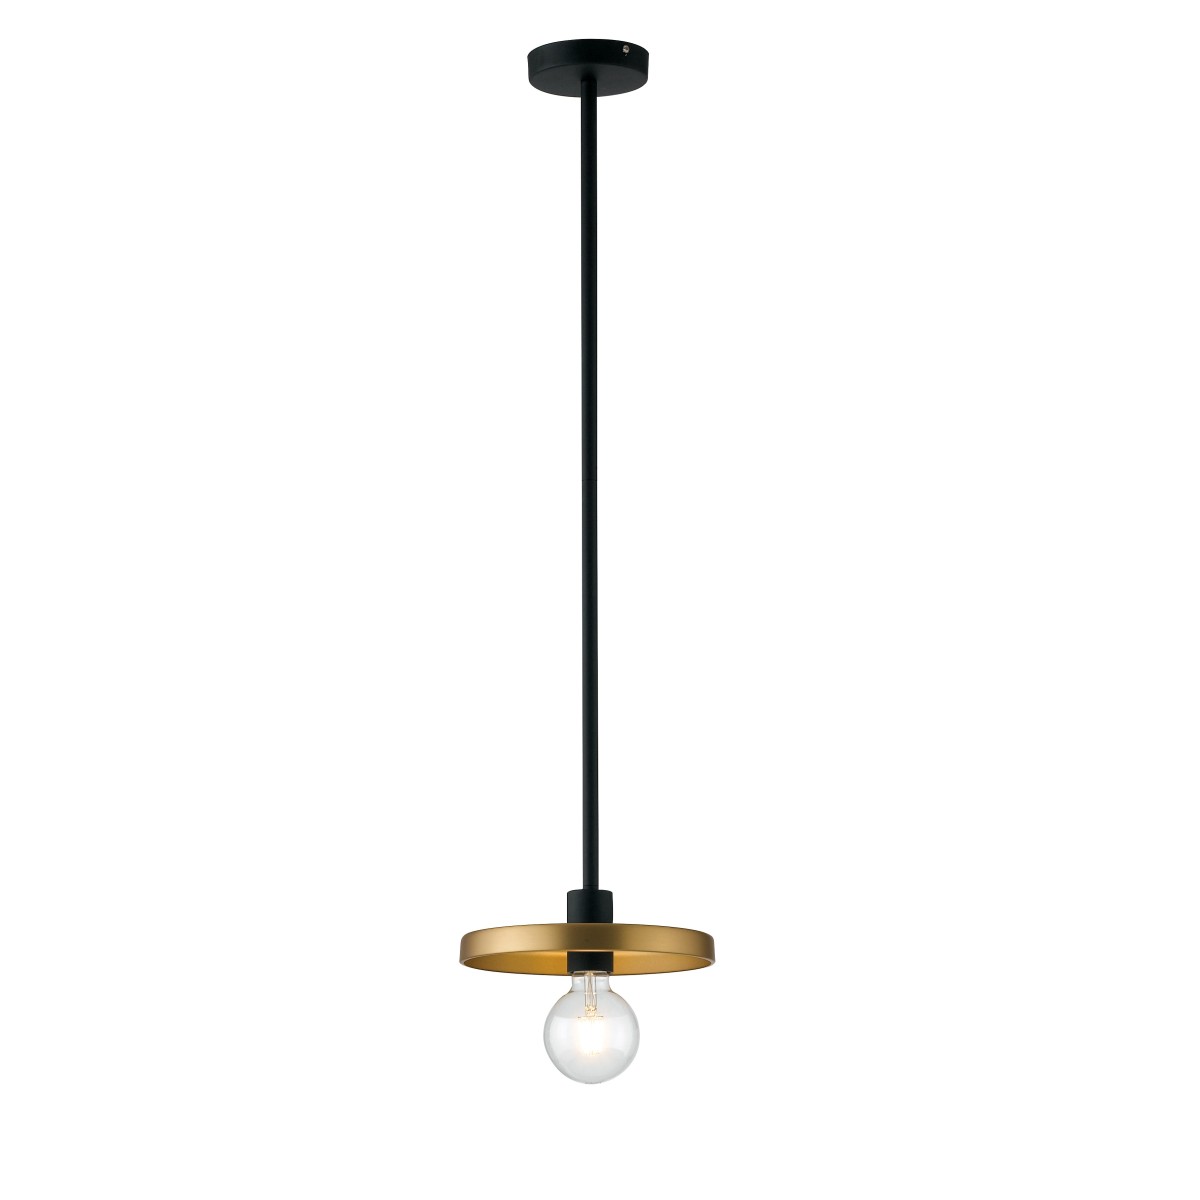 Lampadario a soffitto sospensione Twiga design moderno in metallo nero e oro satinato